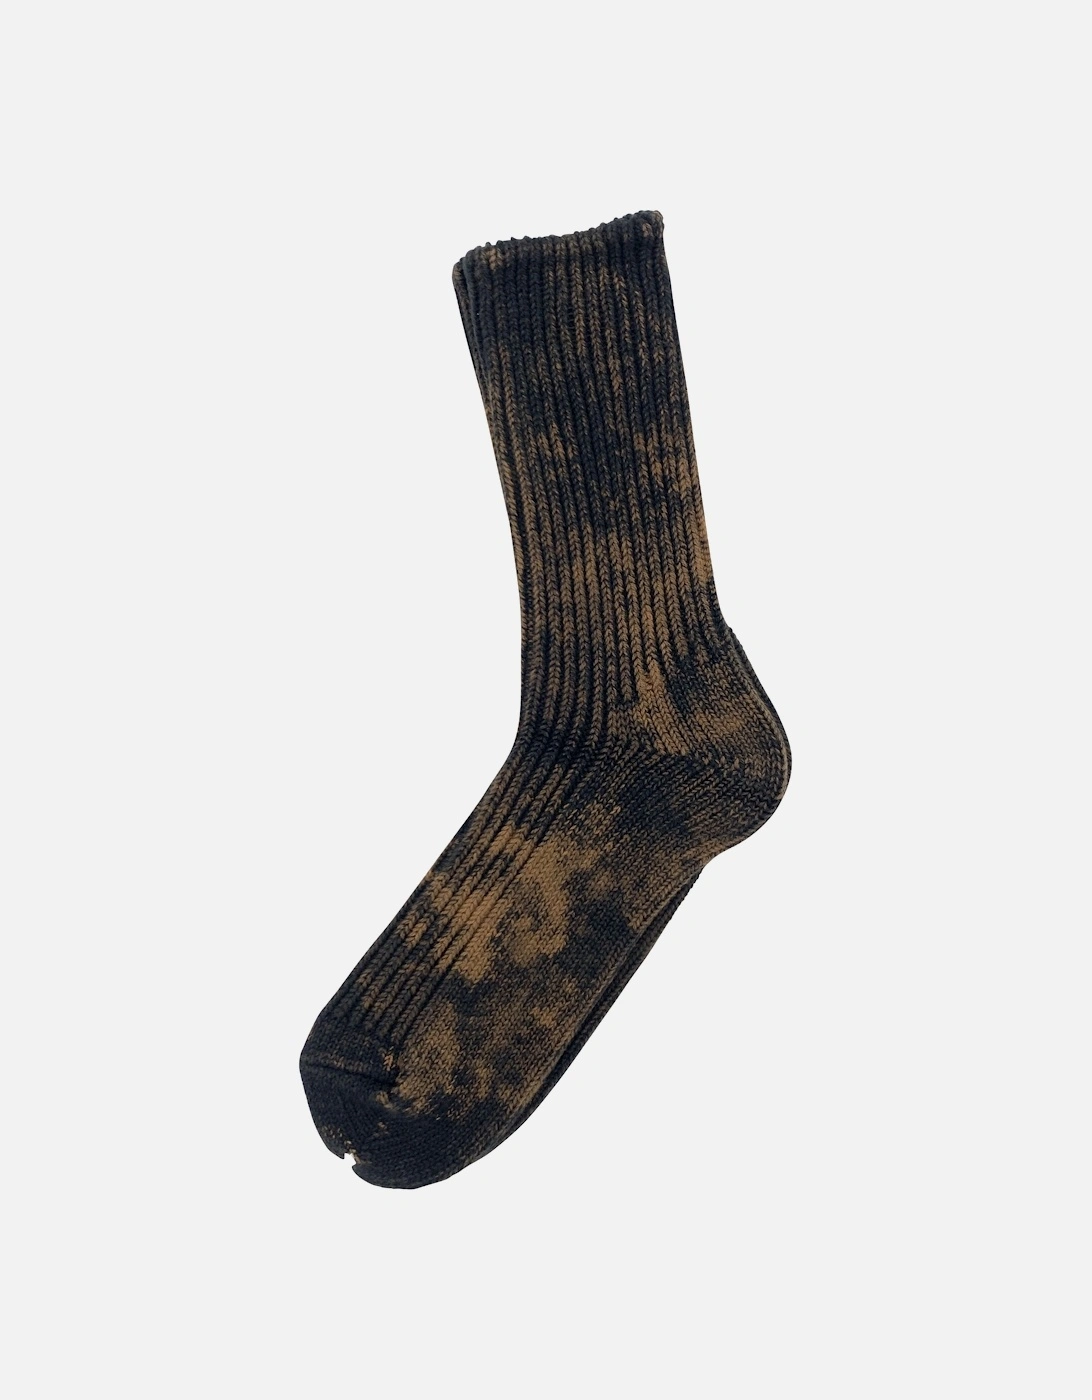 Rostersox's BA Socks - Black